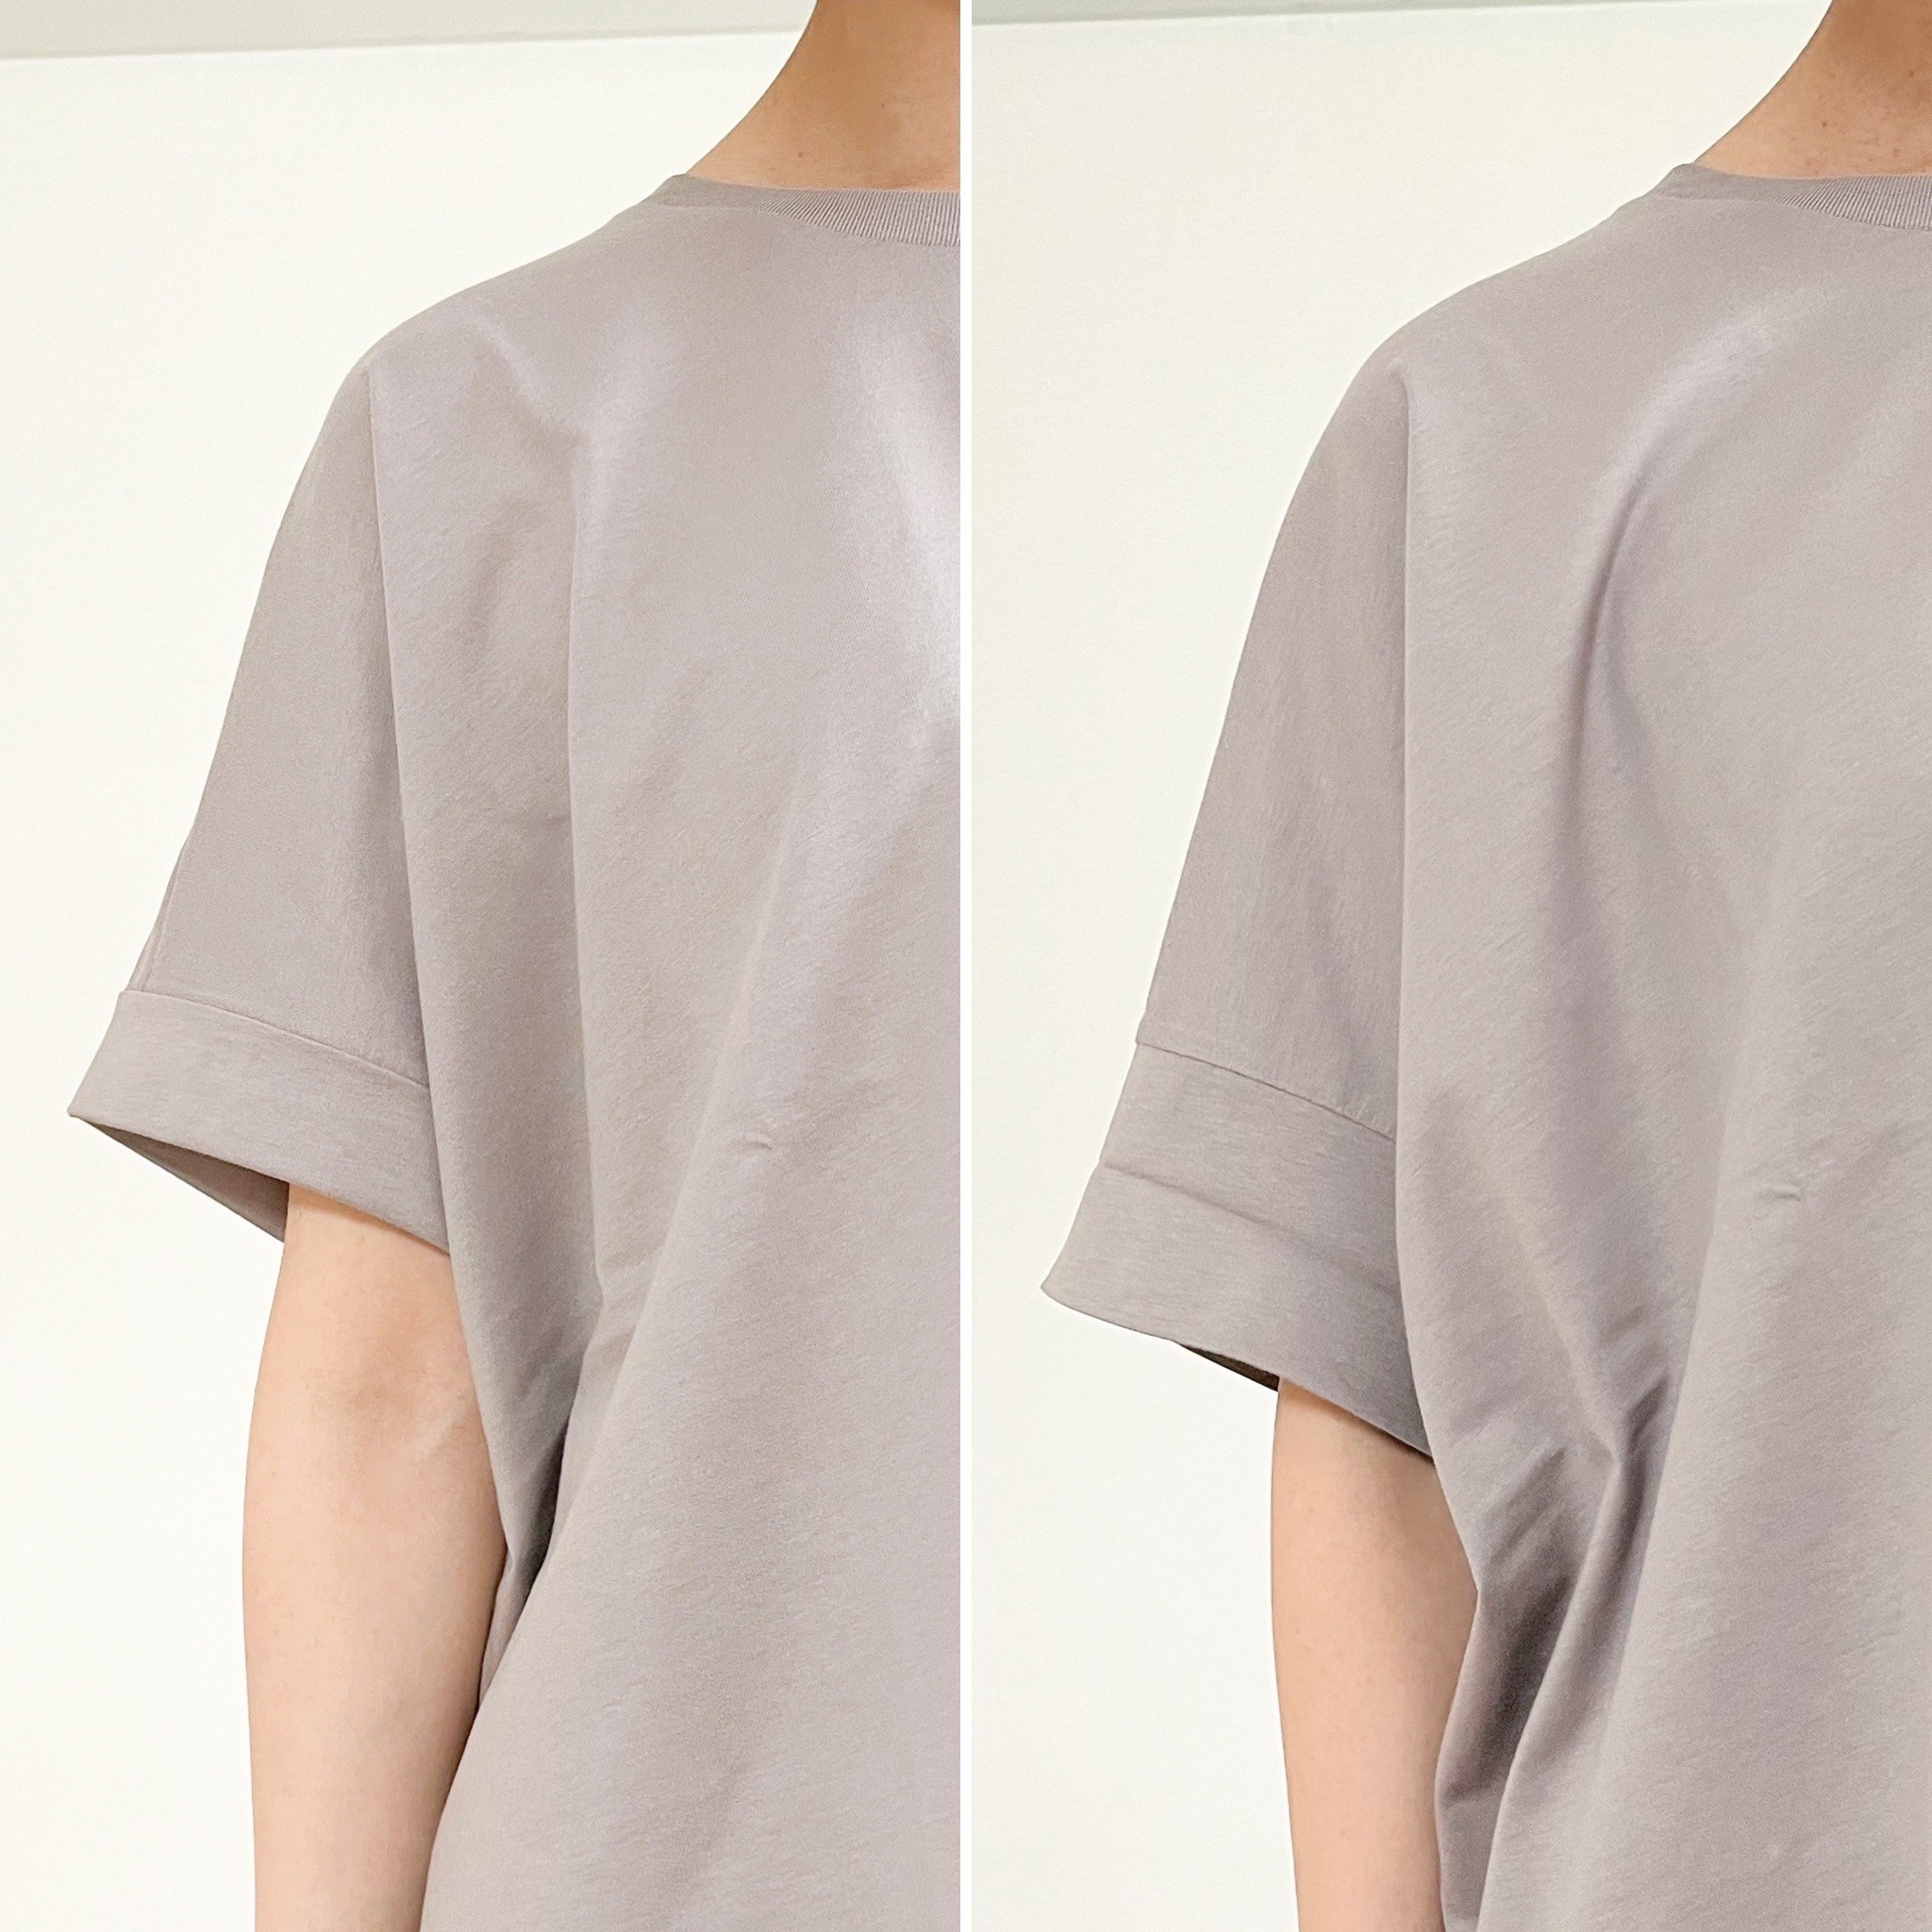 UNIQLO（ユニクロ）のおすすめシャツ「コットンオーバーサイズT（半袖）」ゆったり楽ちんでおしゃれ